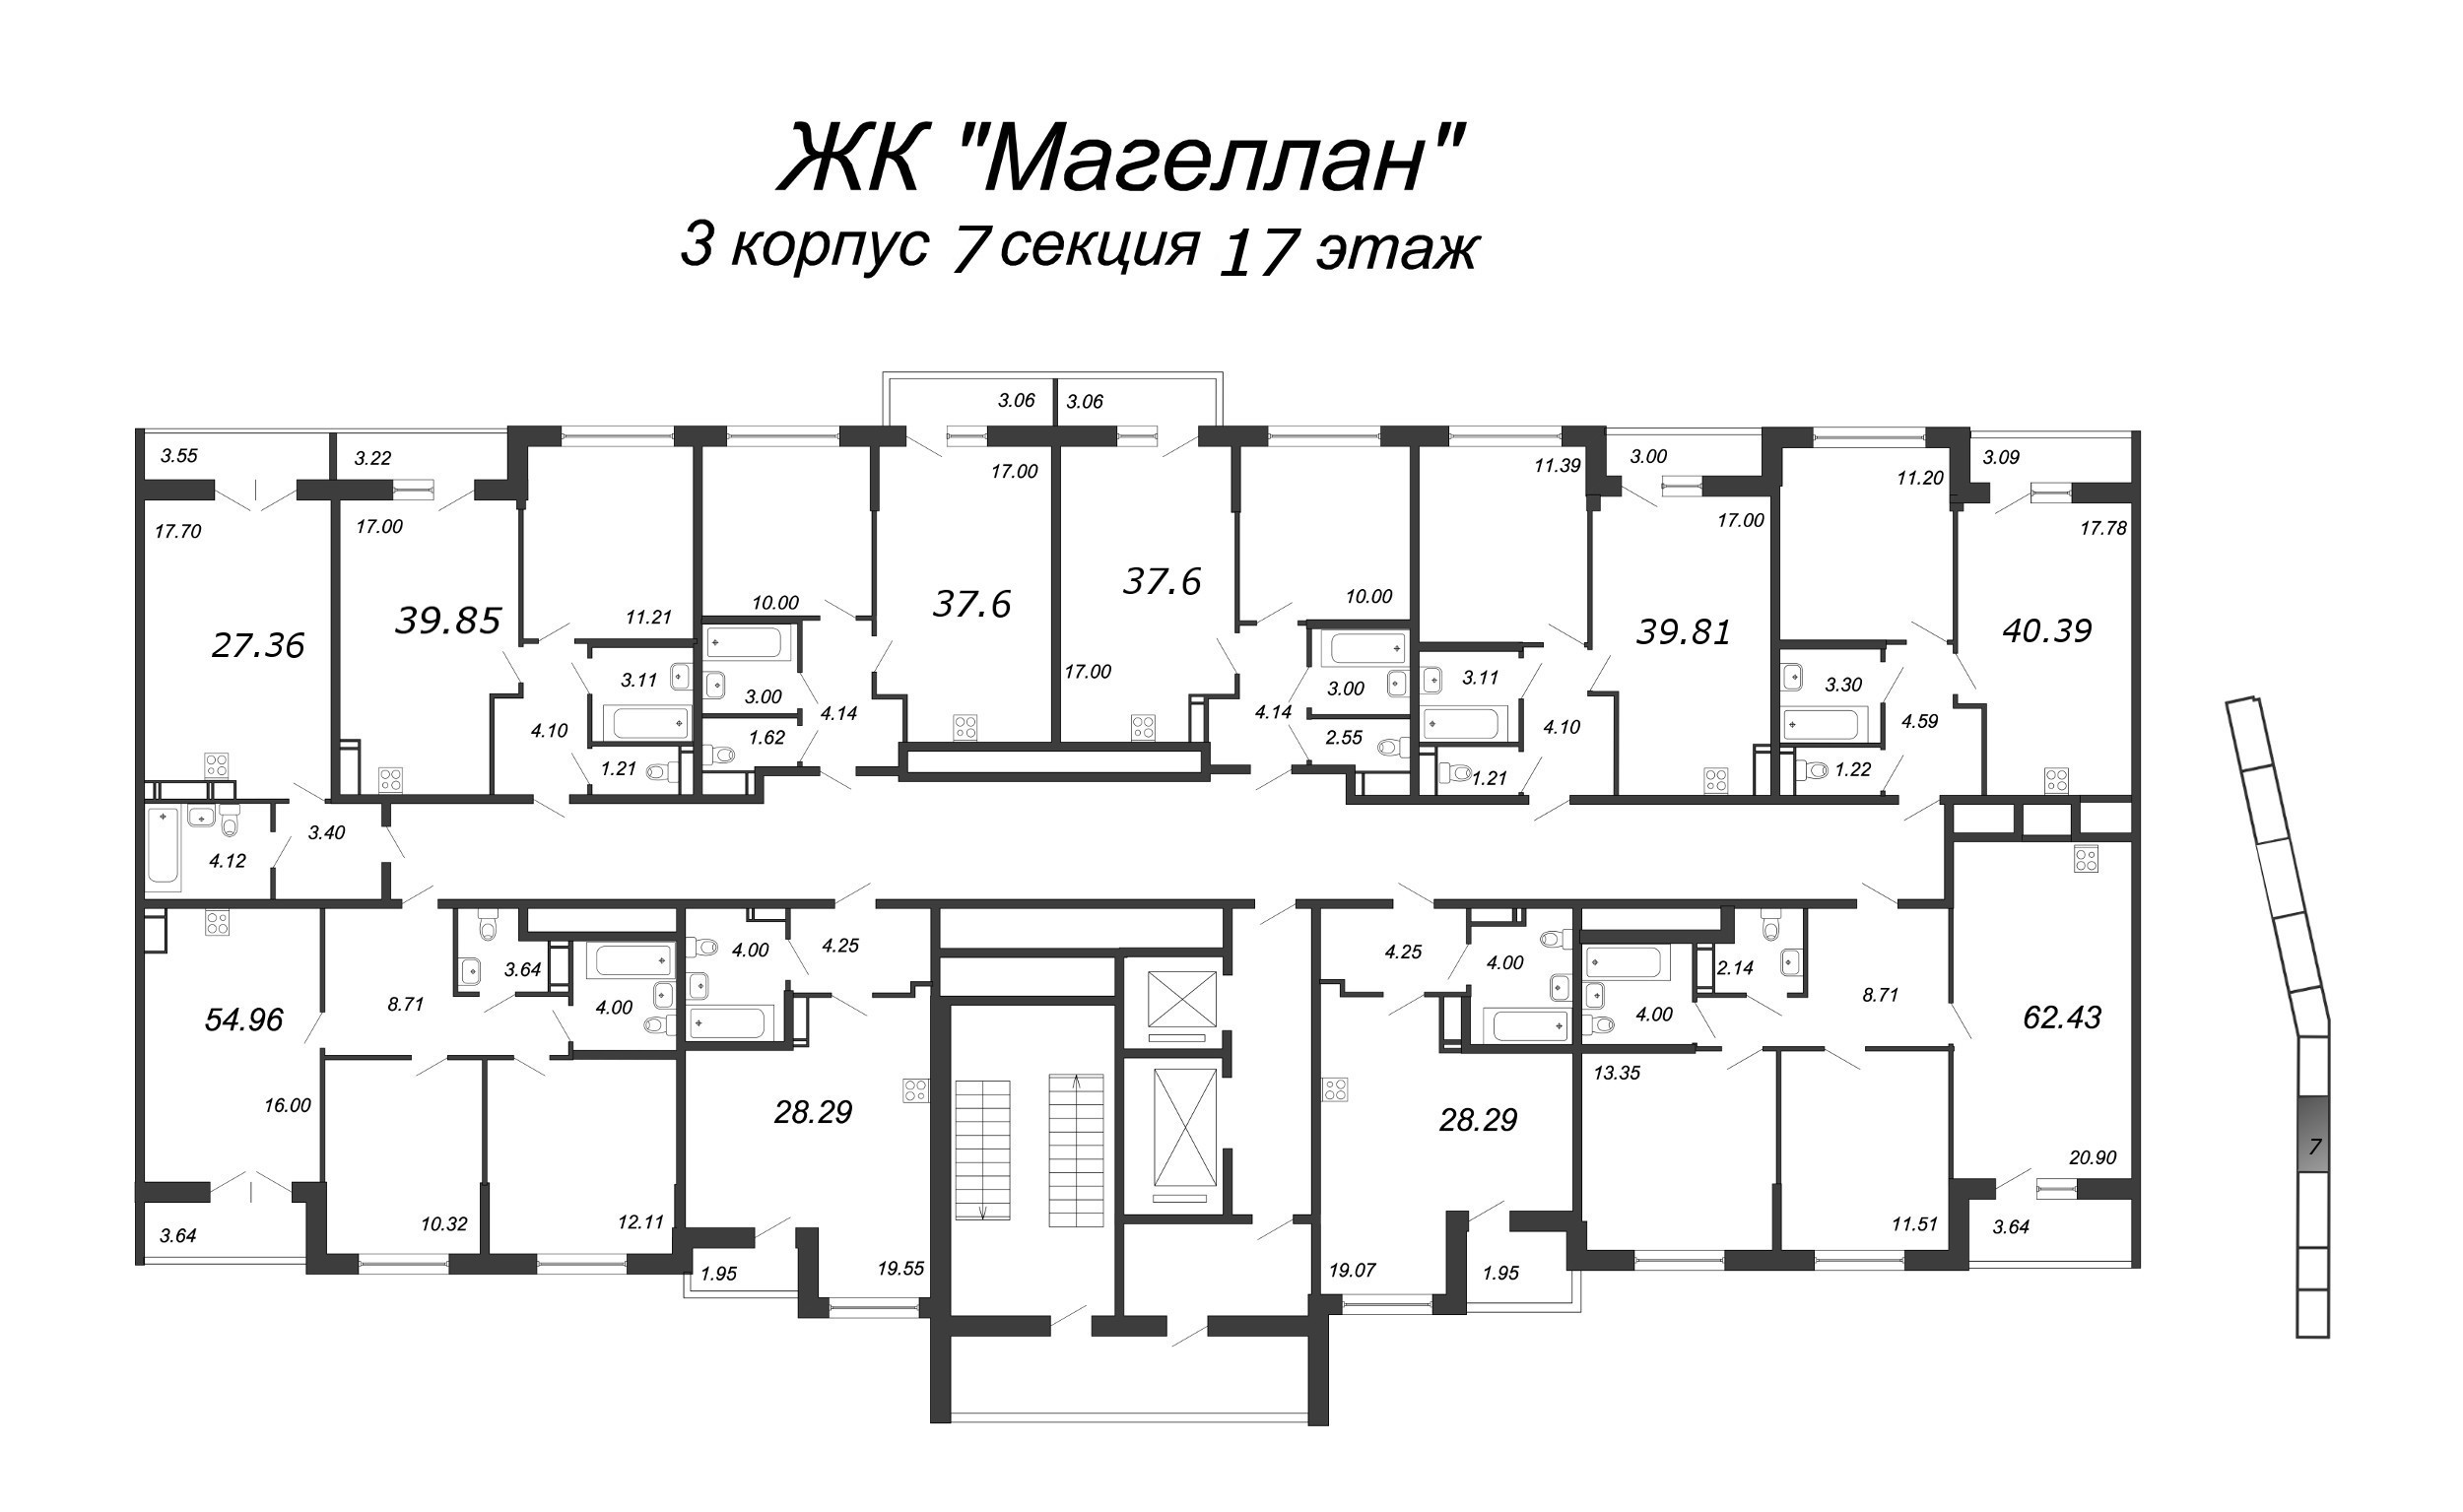 3-комнатная (Евро) квартира, 63.3 м² в ЖК "Магеллан" - планировка этажа